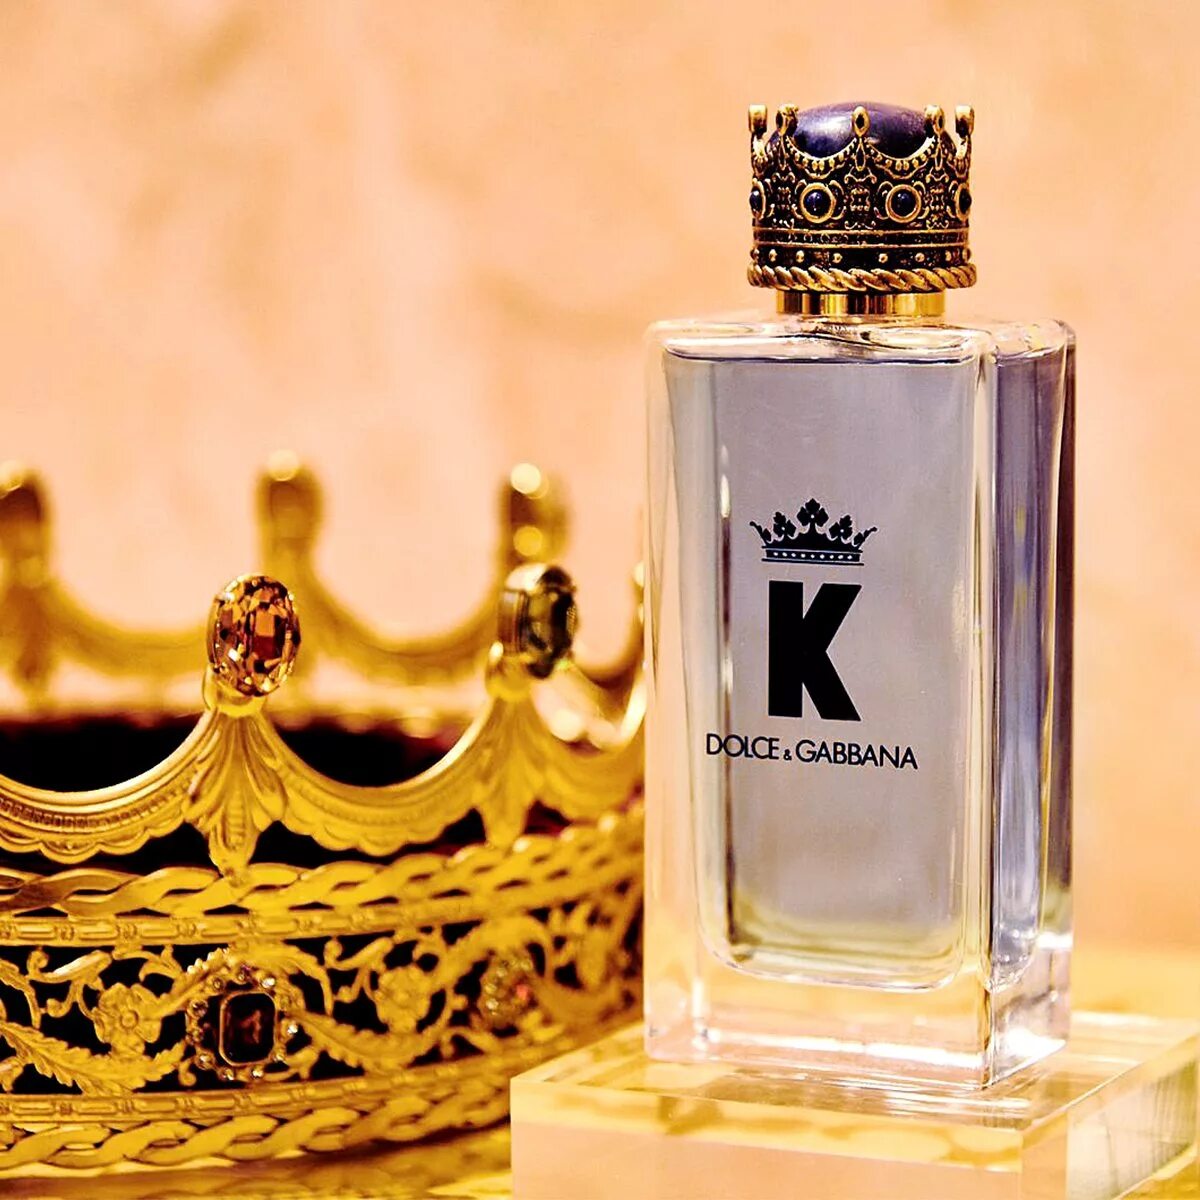 Dolce Gabbana King 100ml. Dolce Gabbana King Parfum. Dolce & Gabbana King Eau de Parfum 100 ml. Dolce Gabbana k King 100ml EDT.